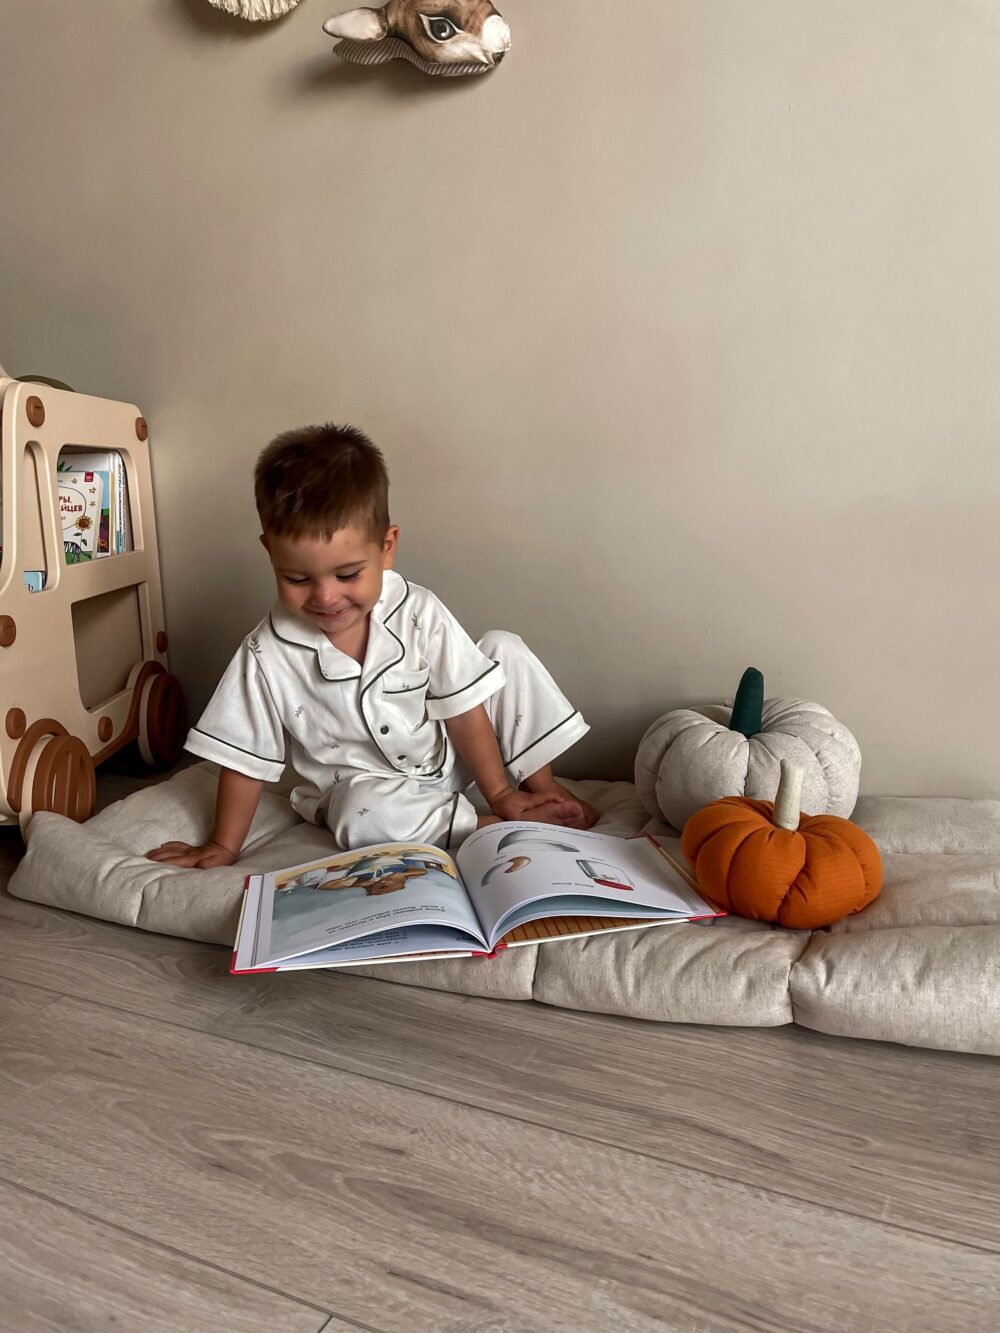 На пледе сидит мальчик и читает книжку рядом с бежево-коричневой прикроватной тумбой, полкой для книг и игрушек в форме машины